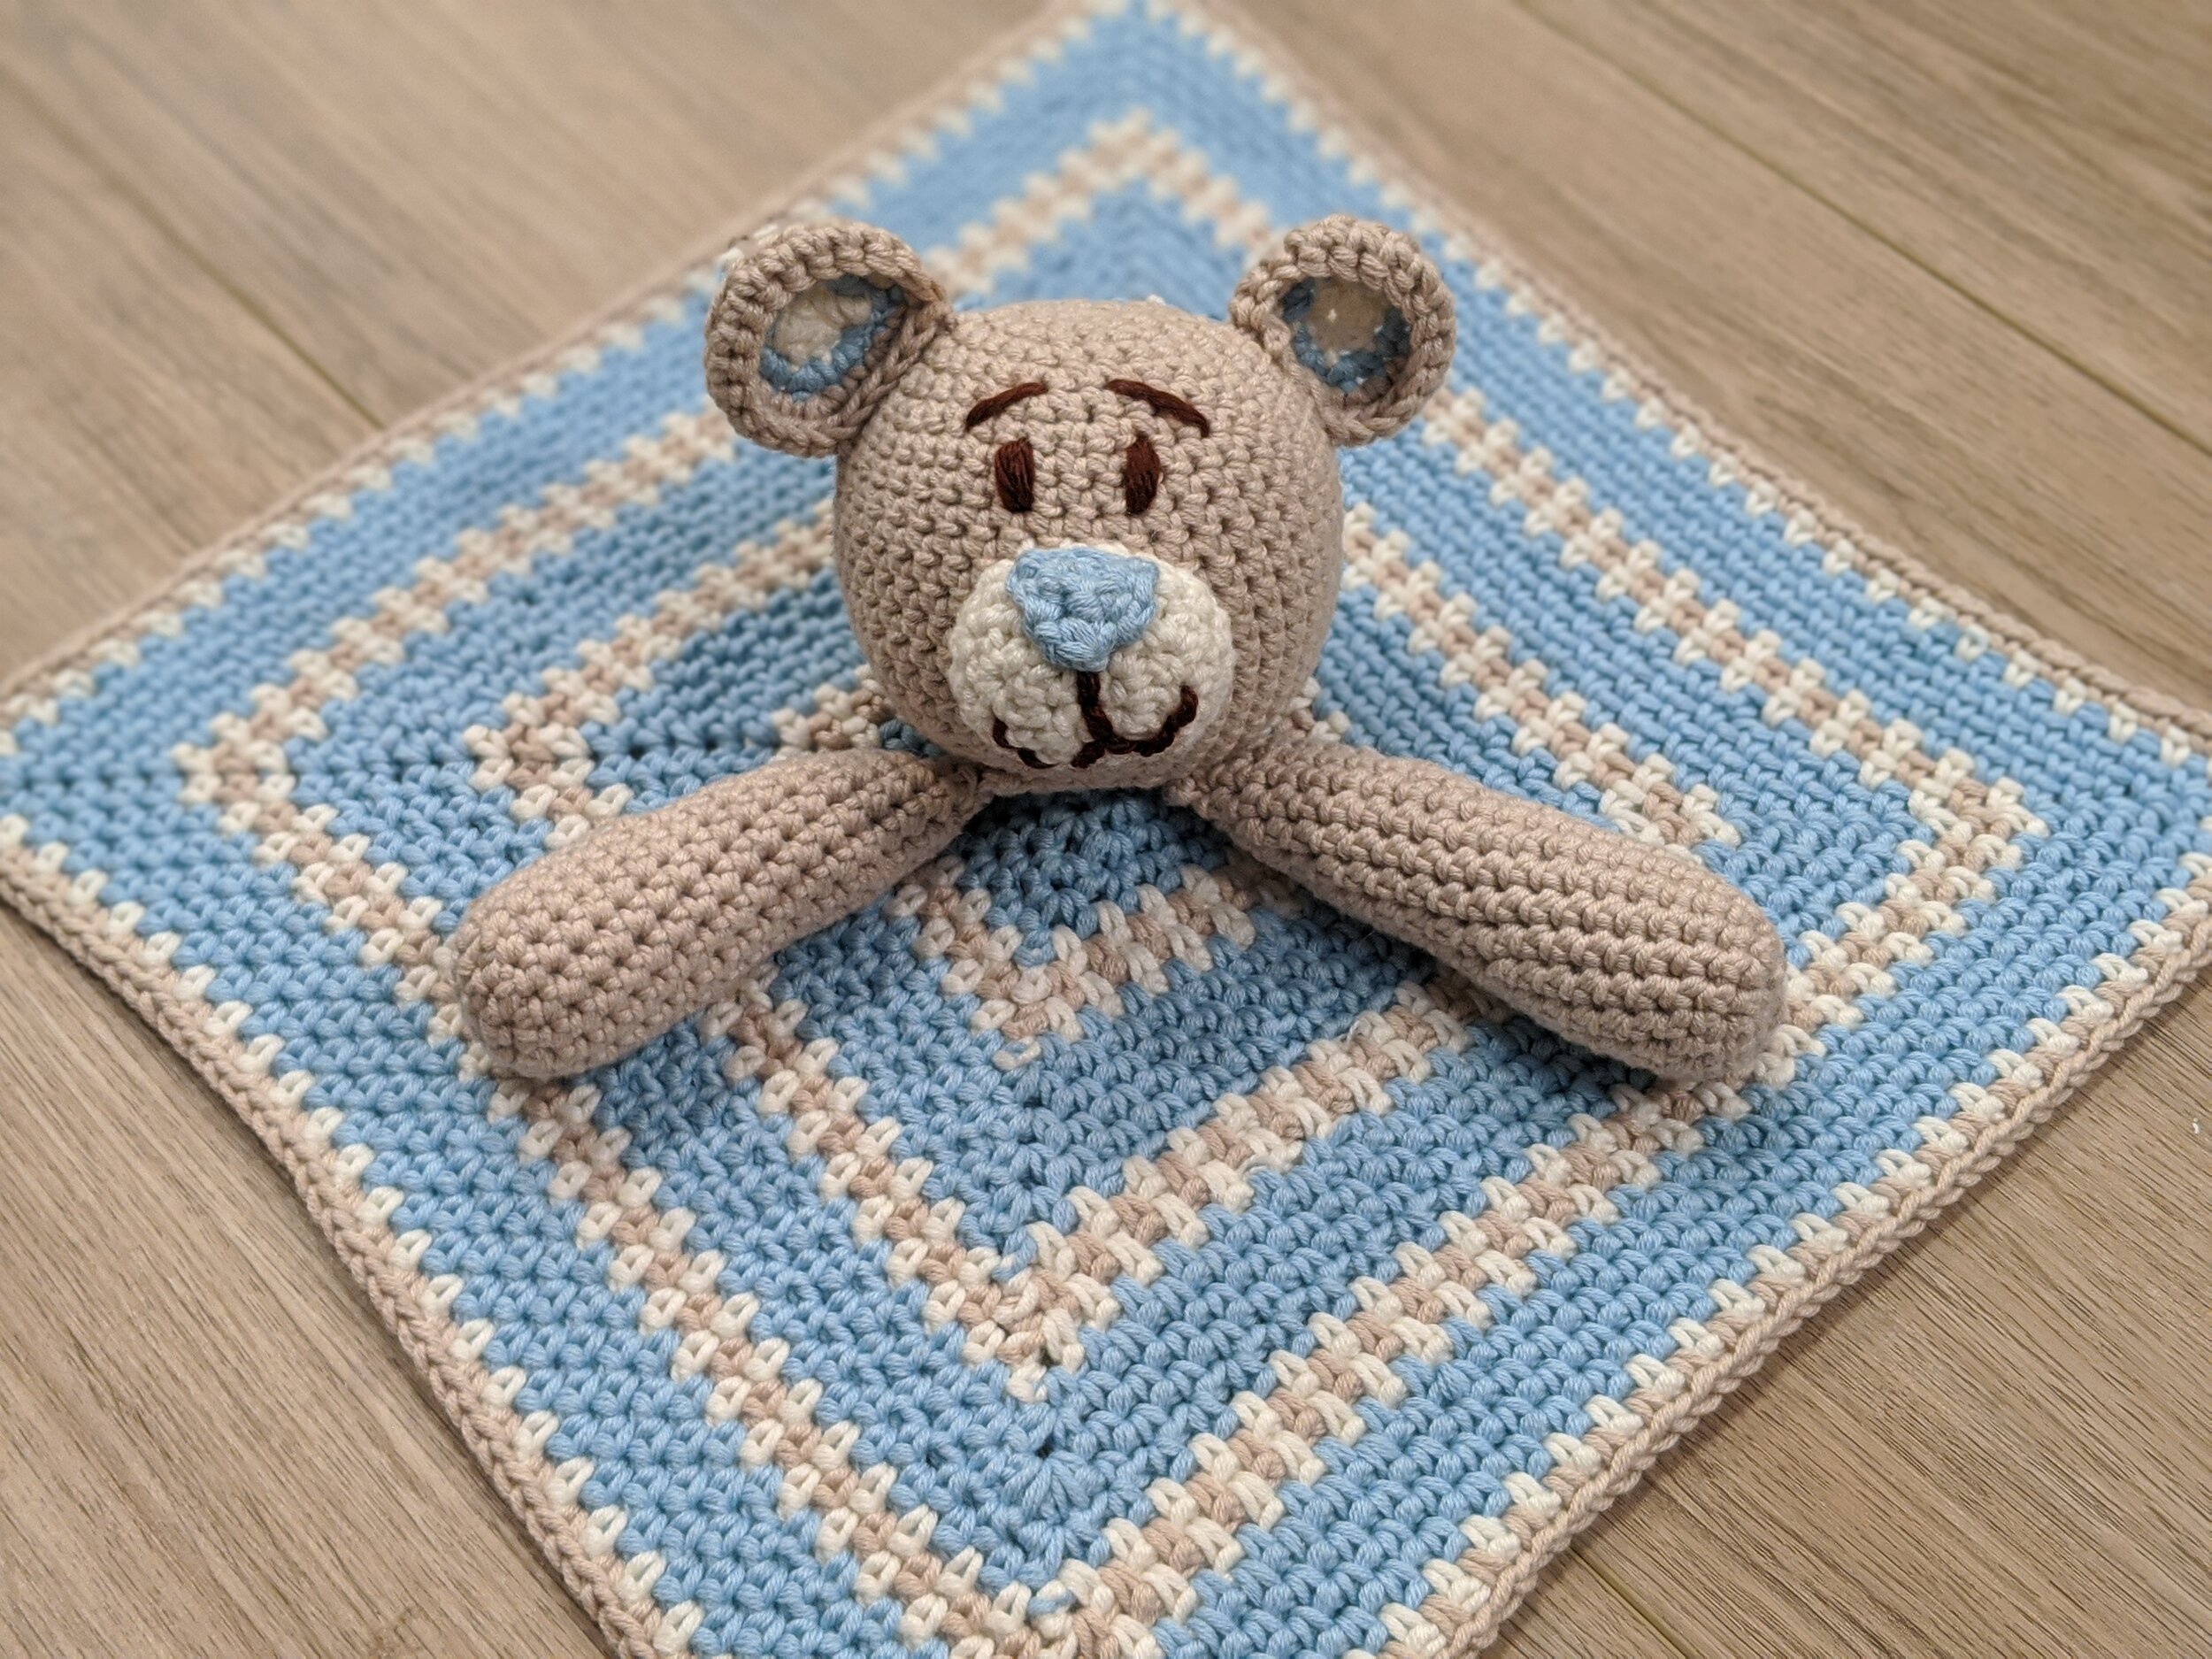 Lovey Bear Toy Crochet Pattern - Electronic Download